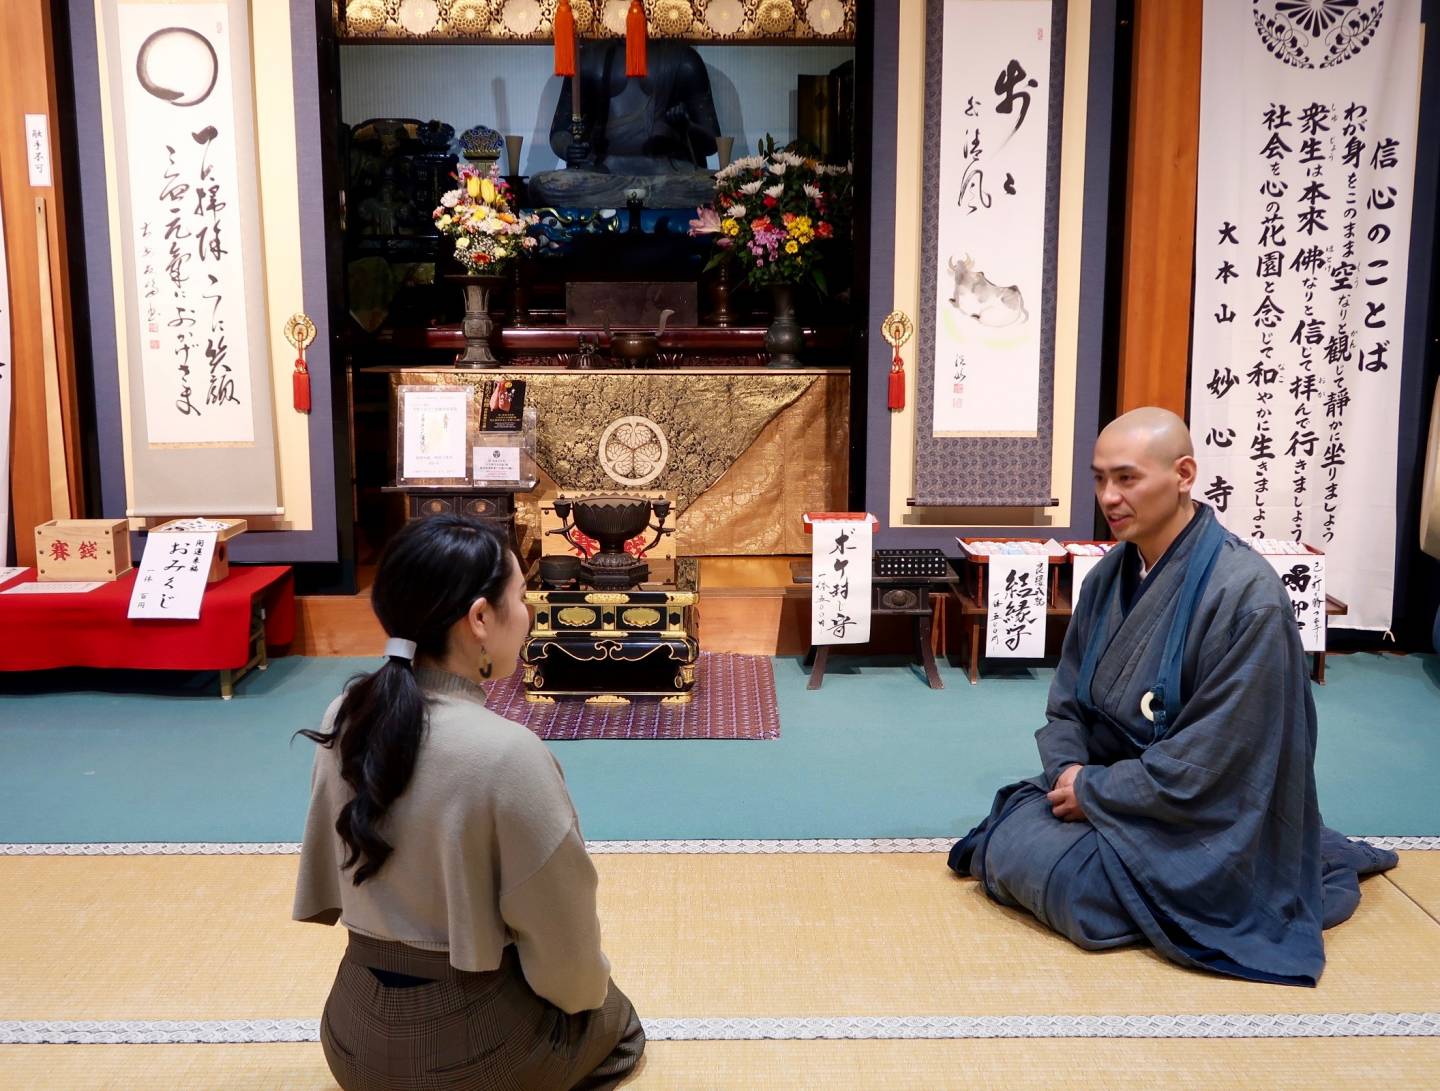 Vortrag über die buddhistische Lehre im Daianzen-ji Tempel.